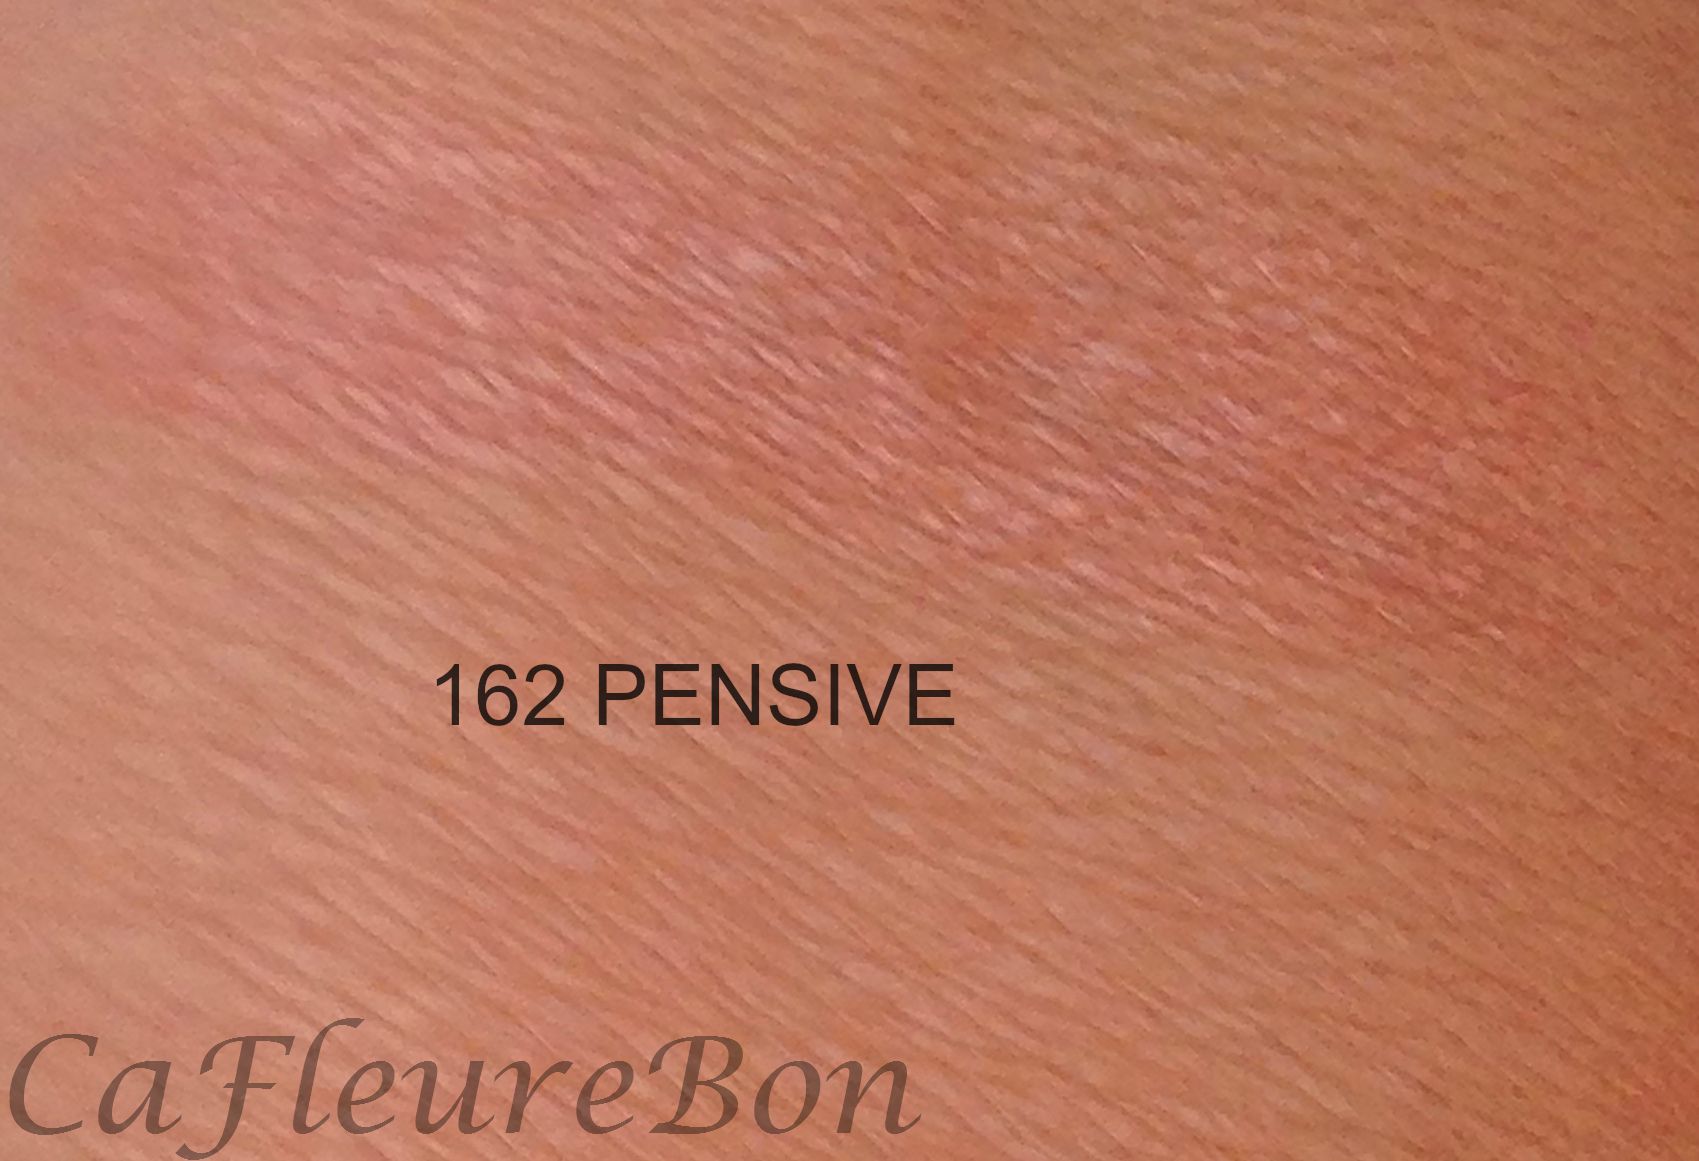 162 CHANELwm pensive rouge allure luminous intense lip color les automanles - ÇaFleureBon Perfume Blog